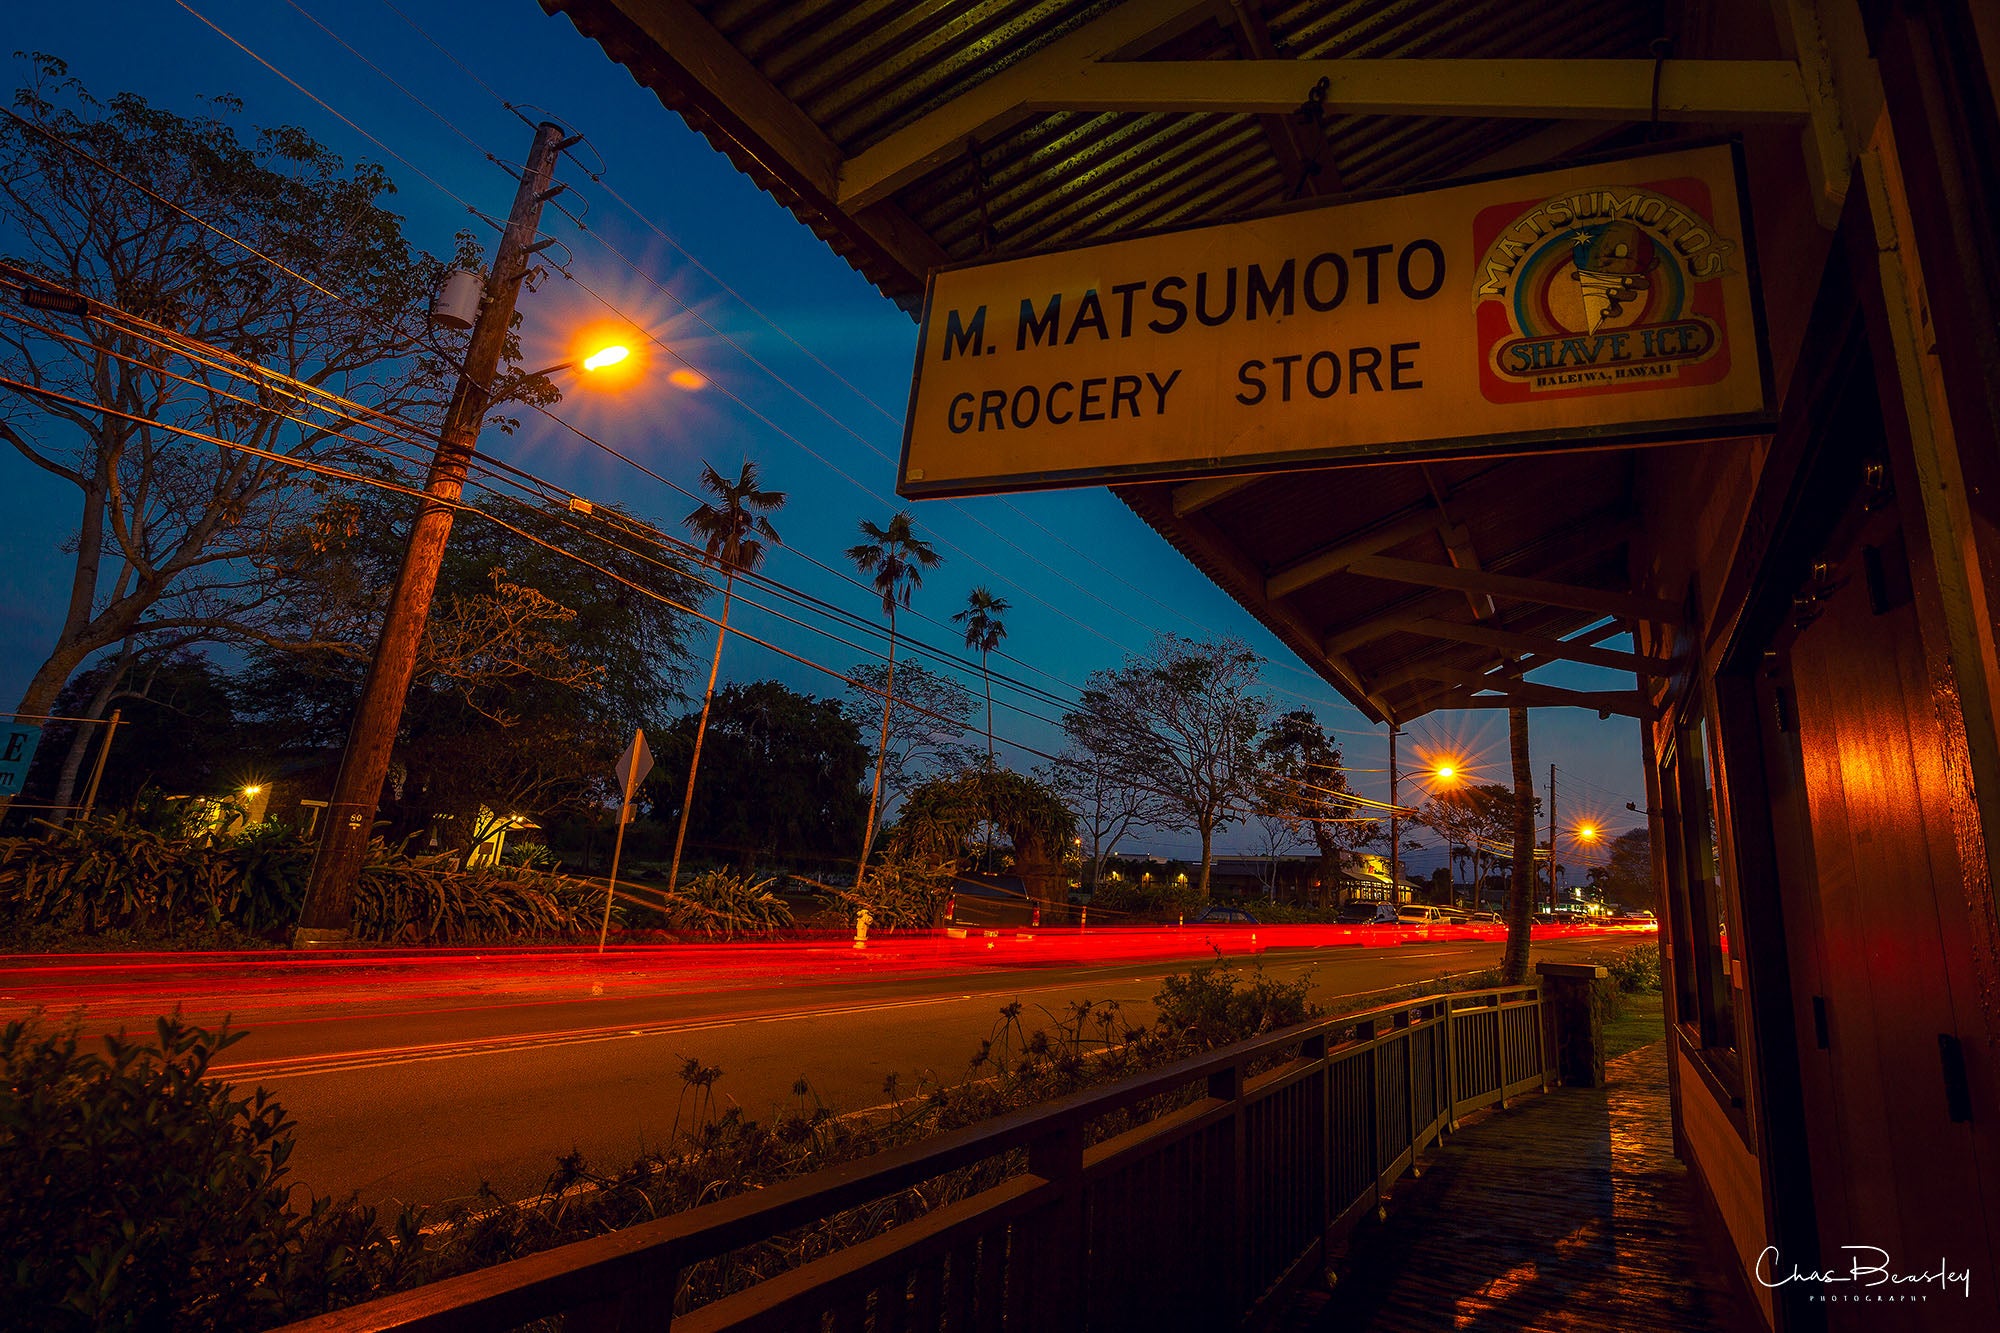 Matsumoto's